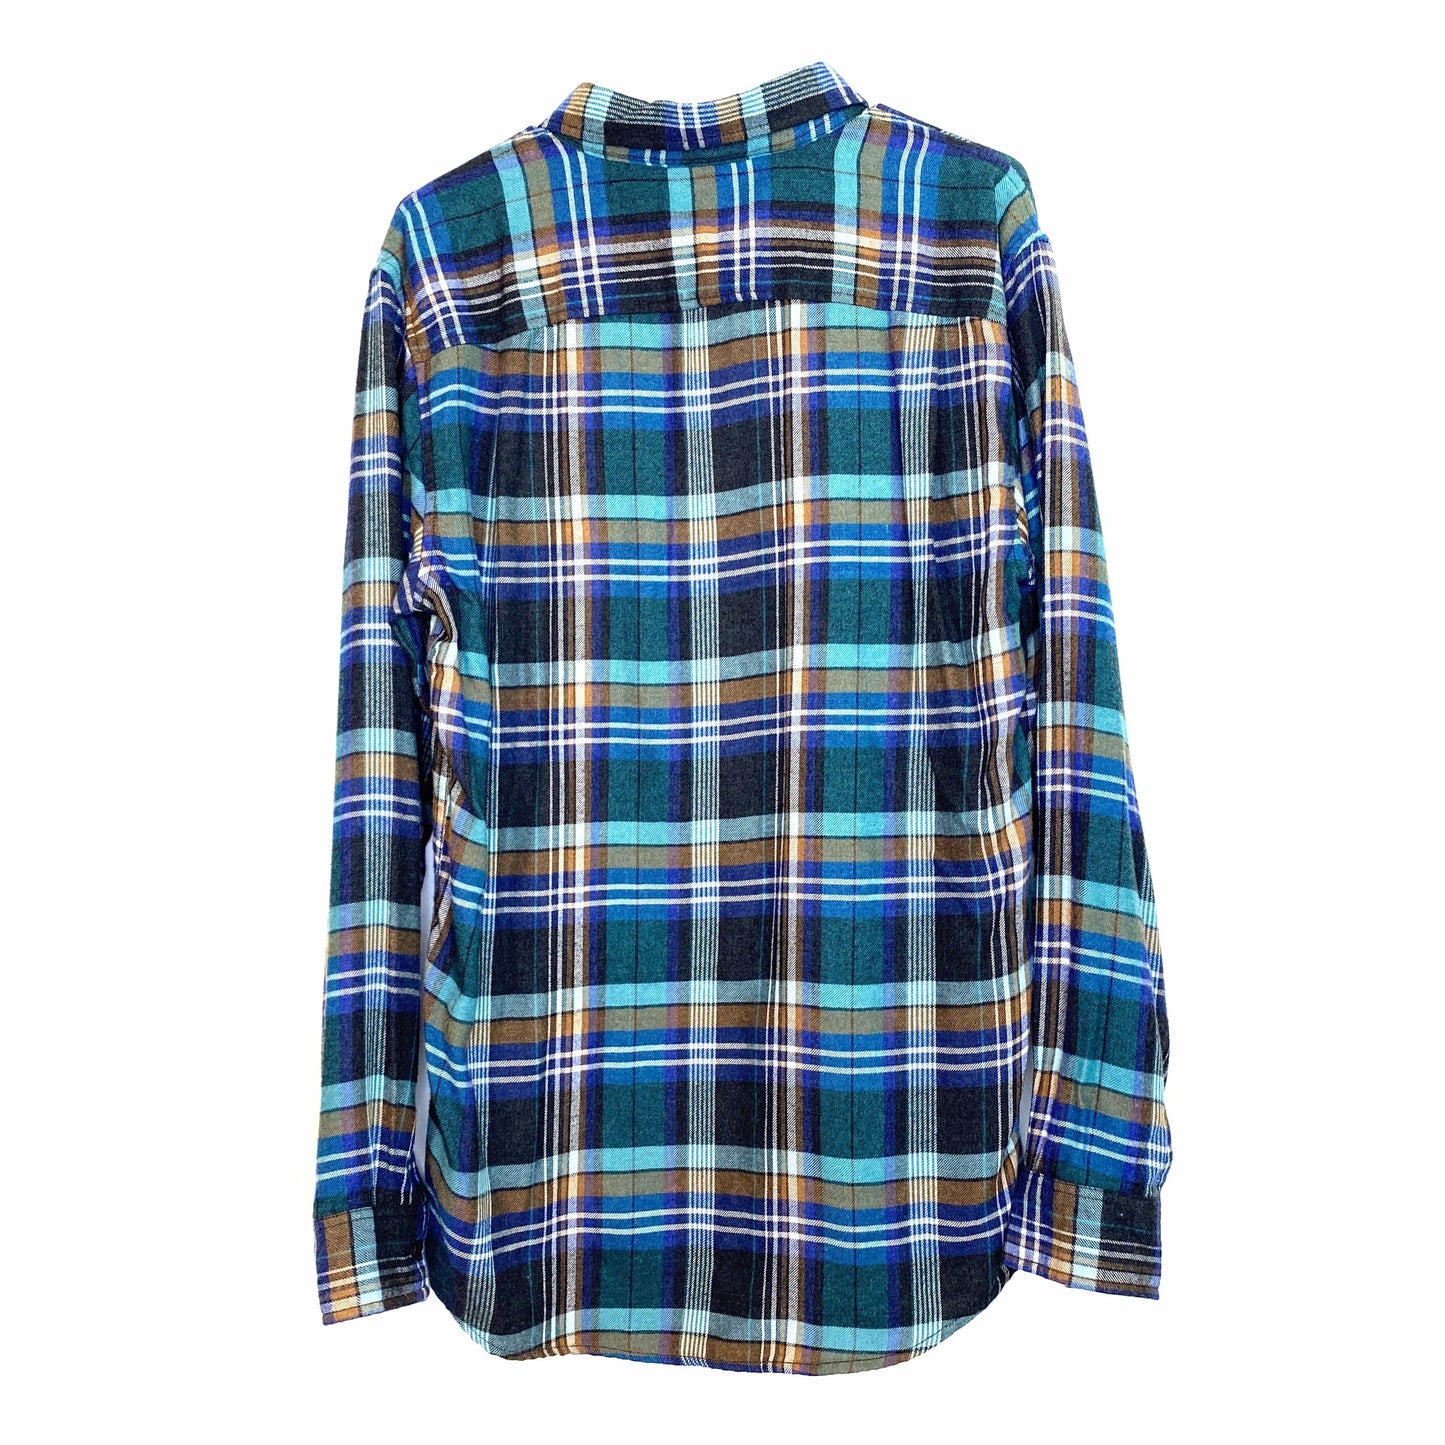 Original Weatherproof Mens Size M Green Blue Plaid Shirt Flannel Button-Down L/s